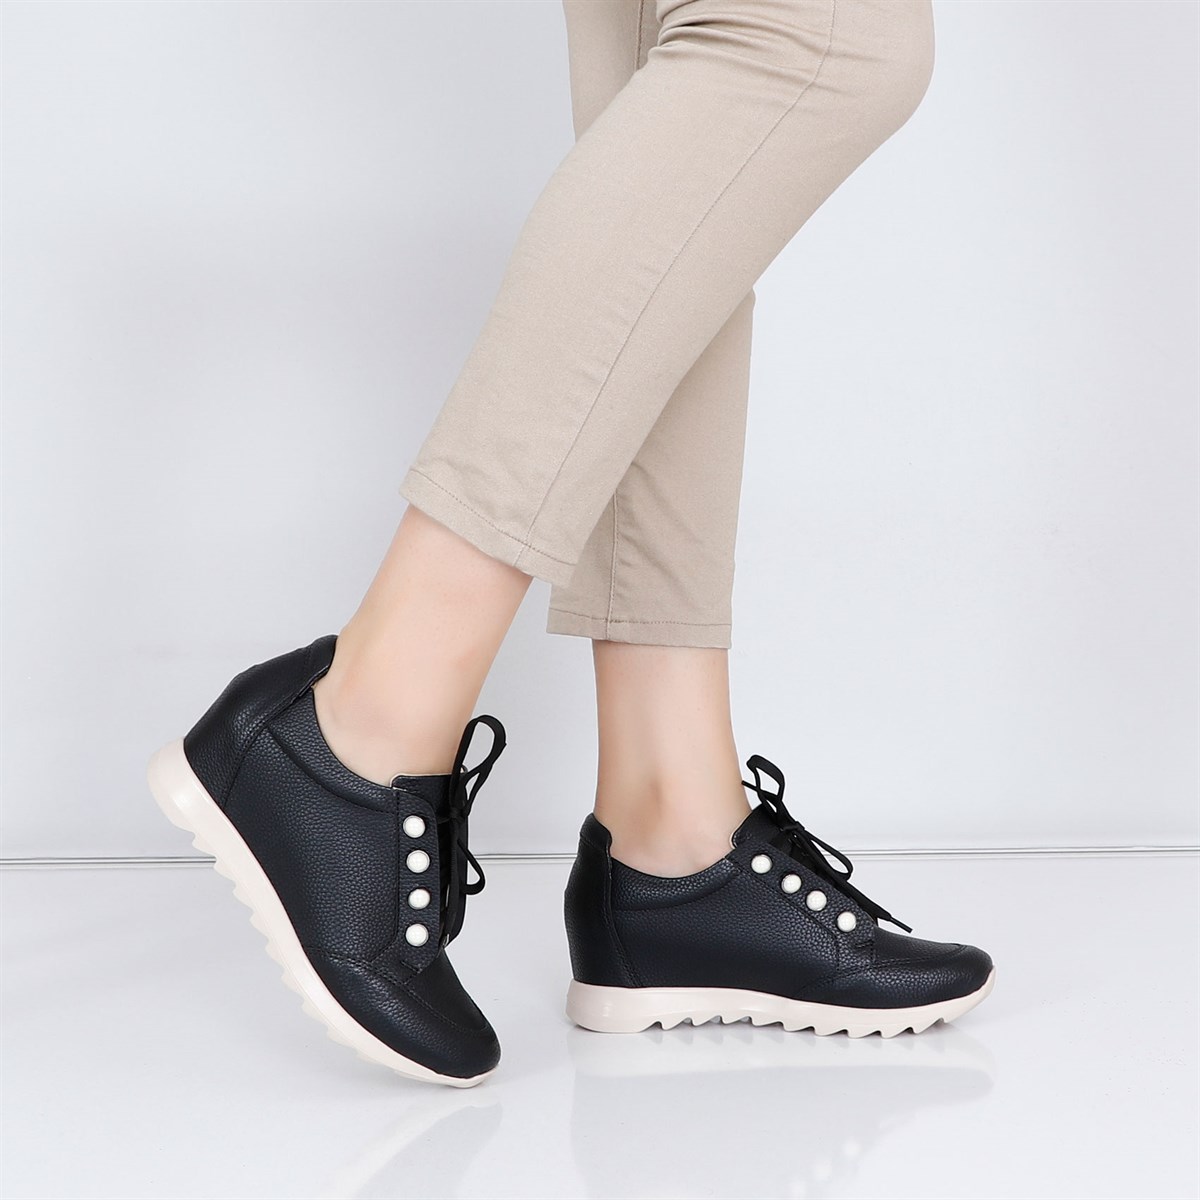 Siyah Dolgu Topuk Kadın Spor Ayakkabı 401 Fiyatı ve Modelleri